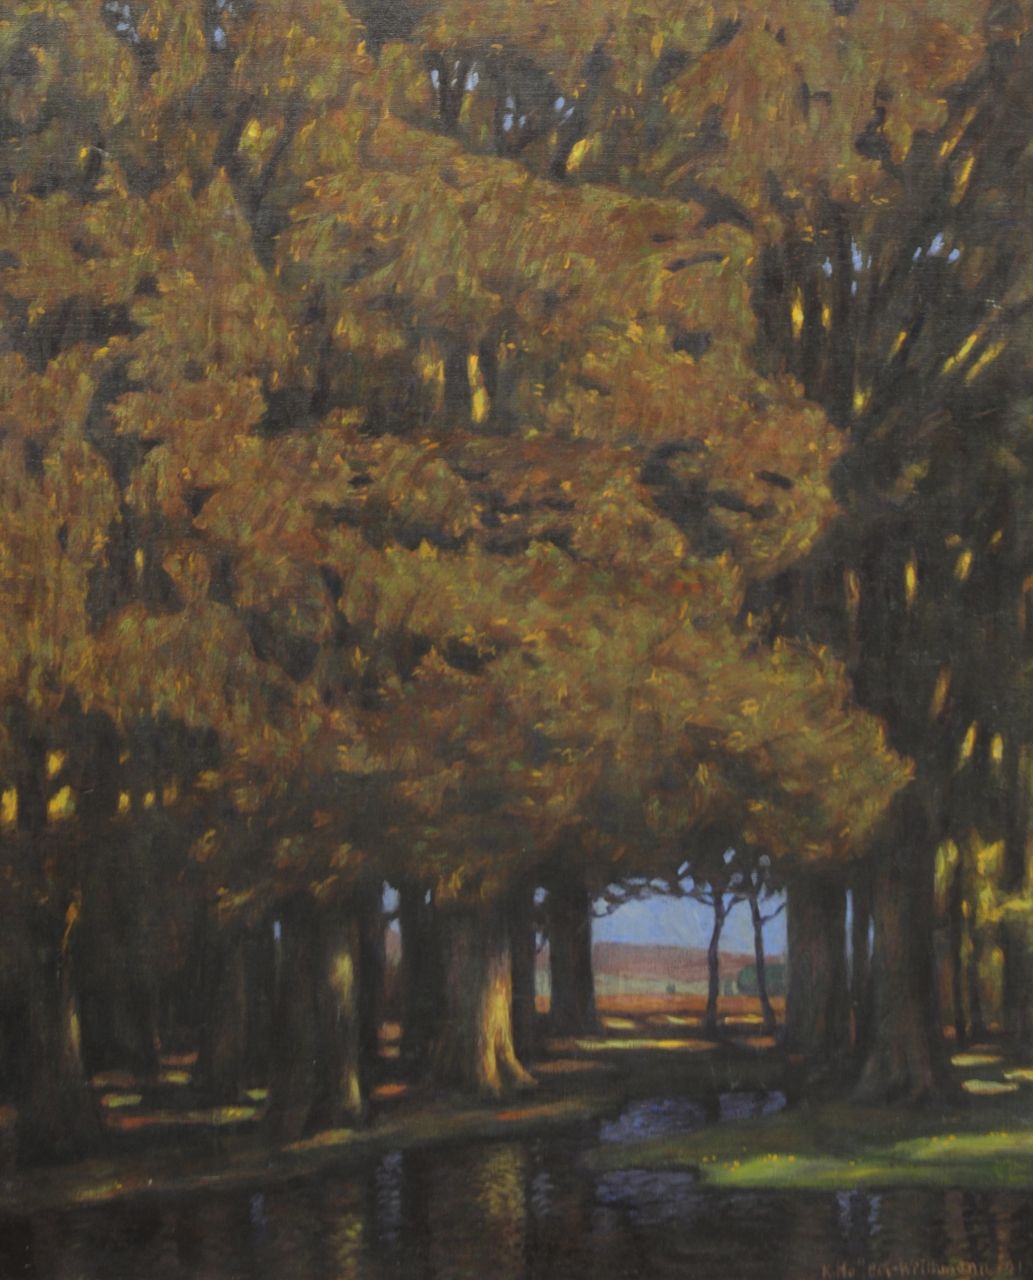 Holleck-Weithmann K.  | Karl Holleck-Weithmann | Schilderijen te koop aangeboden | 't Donkere woud, olieverf op doek 94,7 x 77,0 cm, gesigneerd rechtsonder en gedateerd 1911